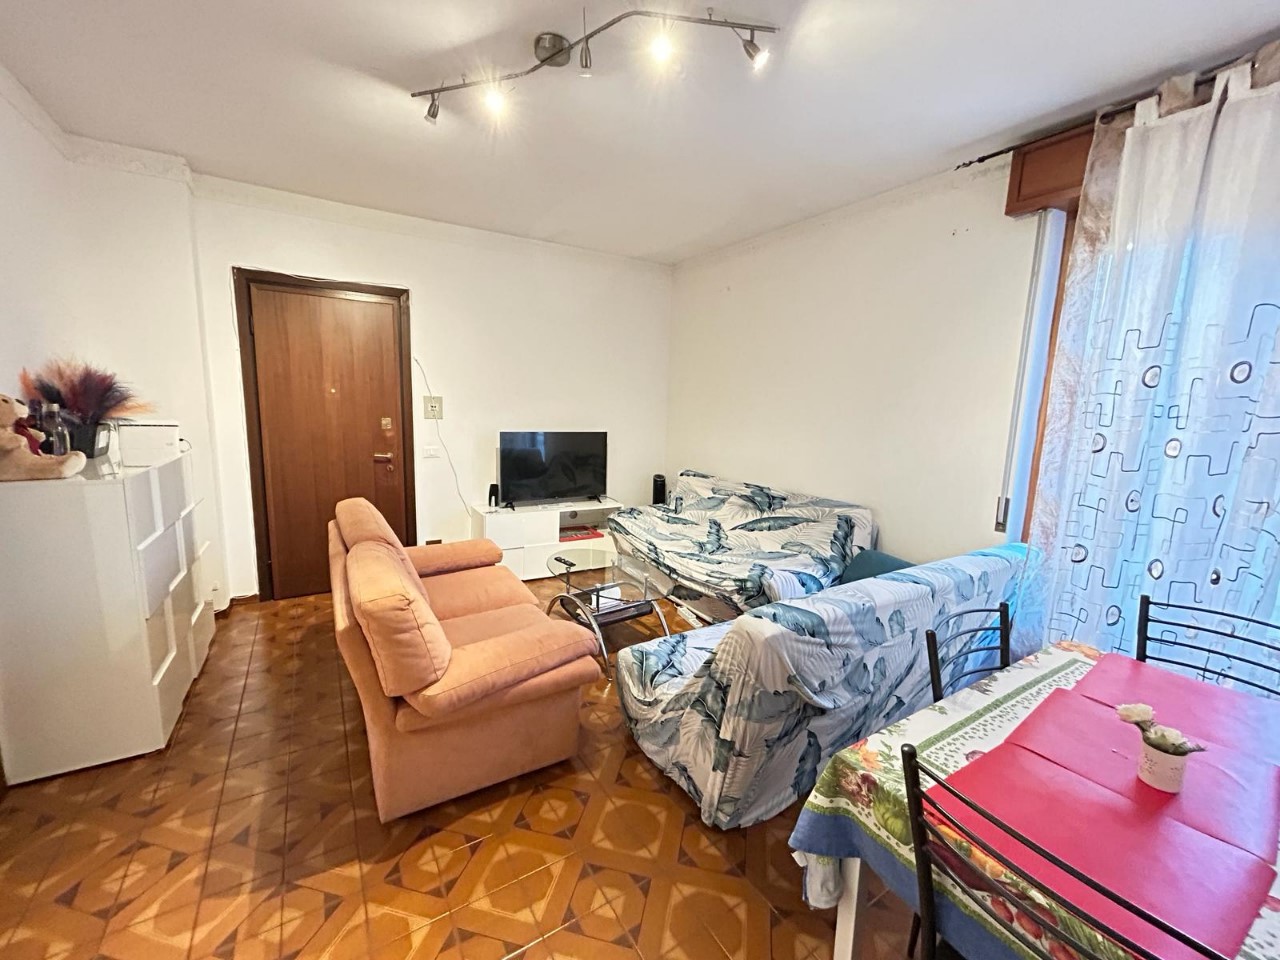 Appartamento in vendita a Rivergaro, 3 locali, prezzo € 85.000 | PortaleAgenzieImmobiliari.it